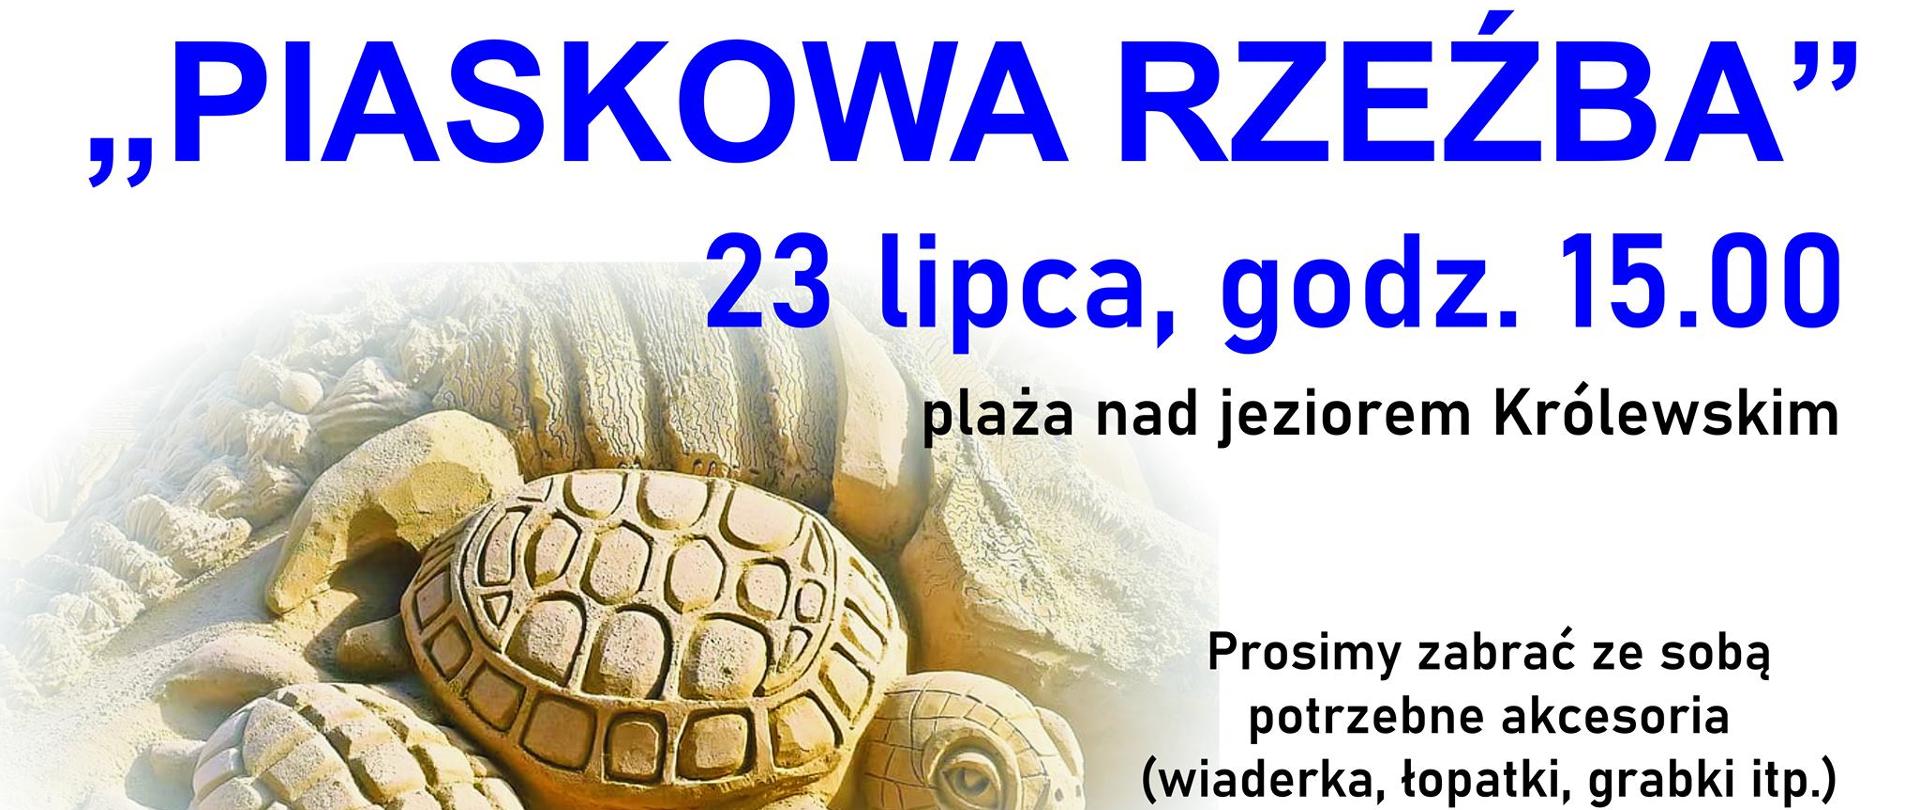 Zapraszamy dzieci i dorosłych do udziału w konkursie "Piaskowa rzeźba''. Spotykamy się w piątek o godz. 15:00 na plaży nad Jeziorem Królewskim.